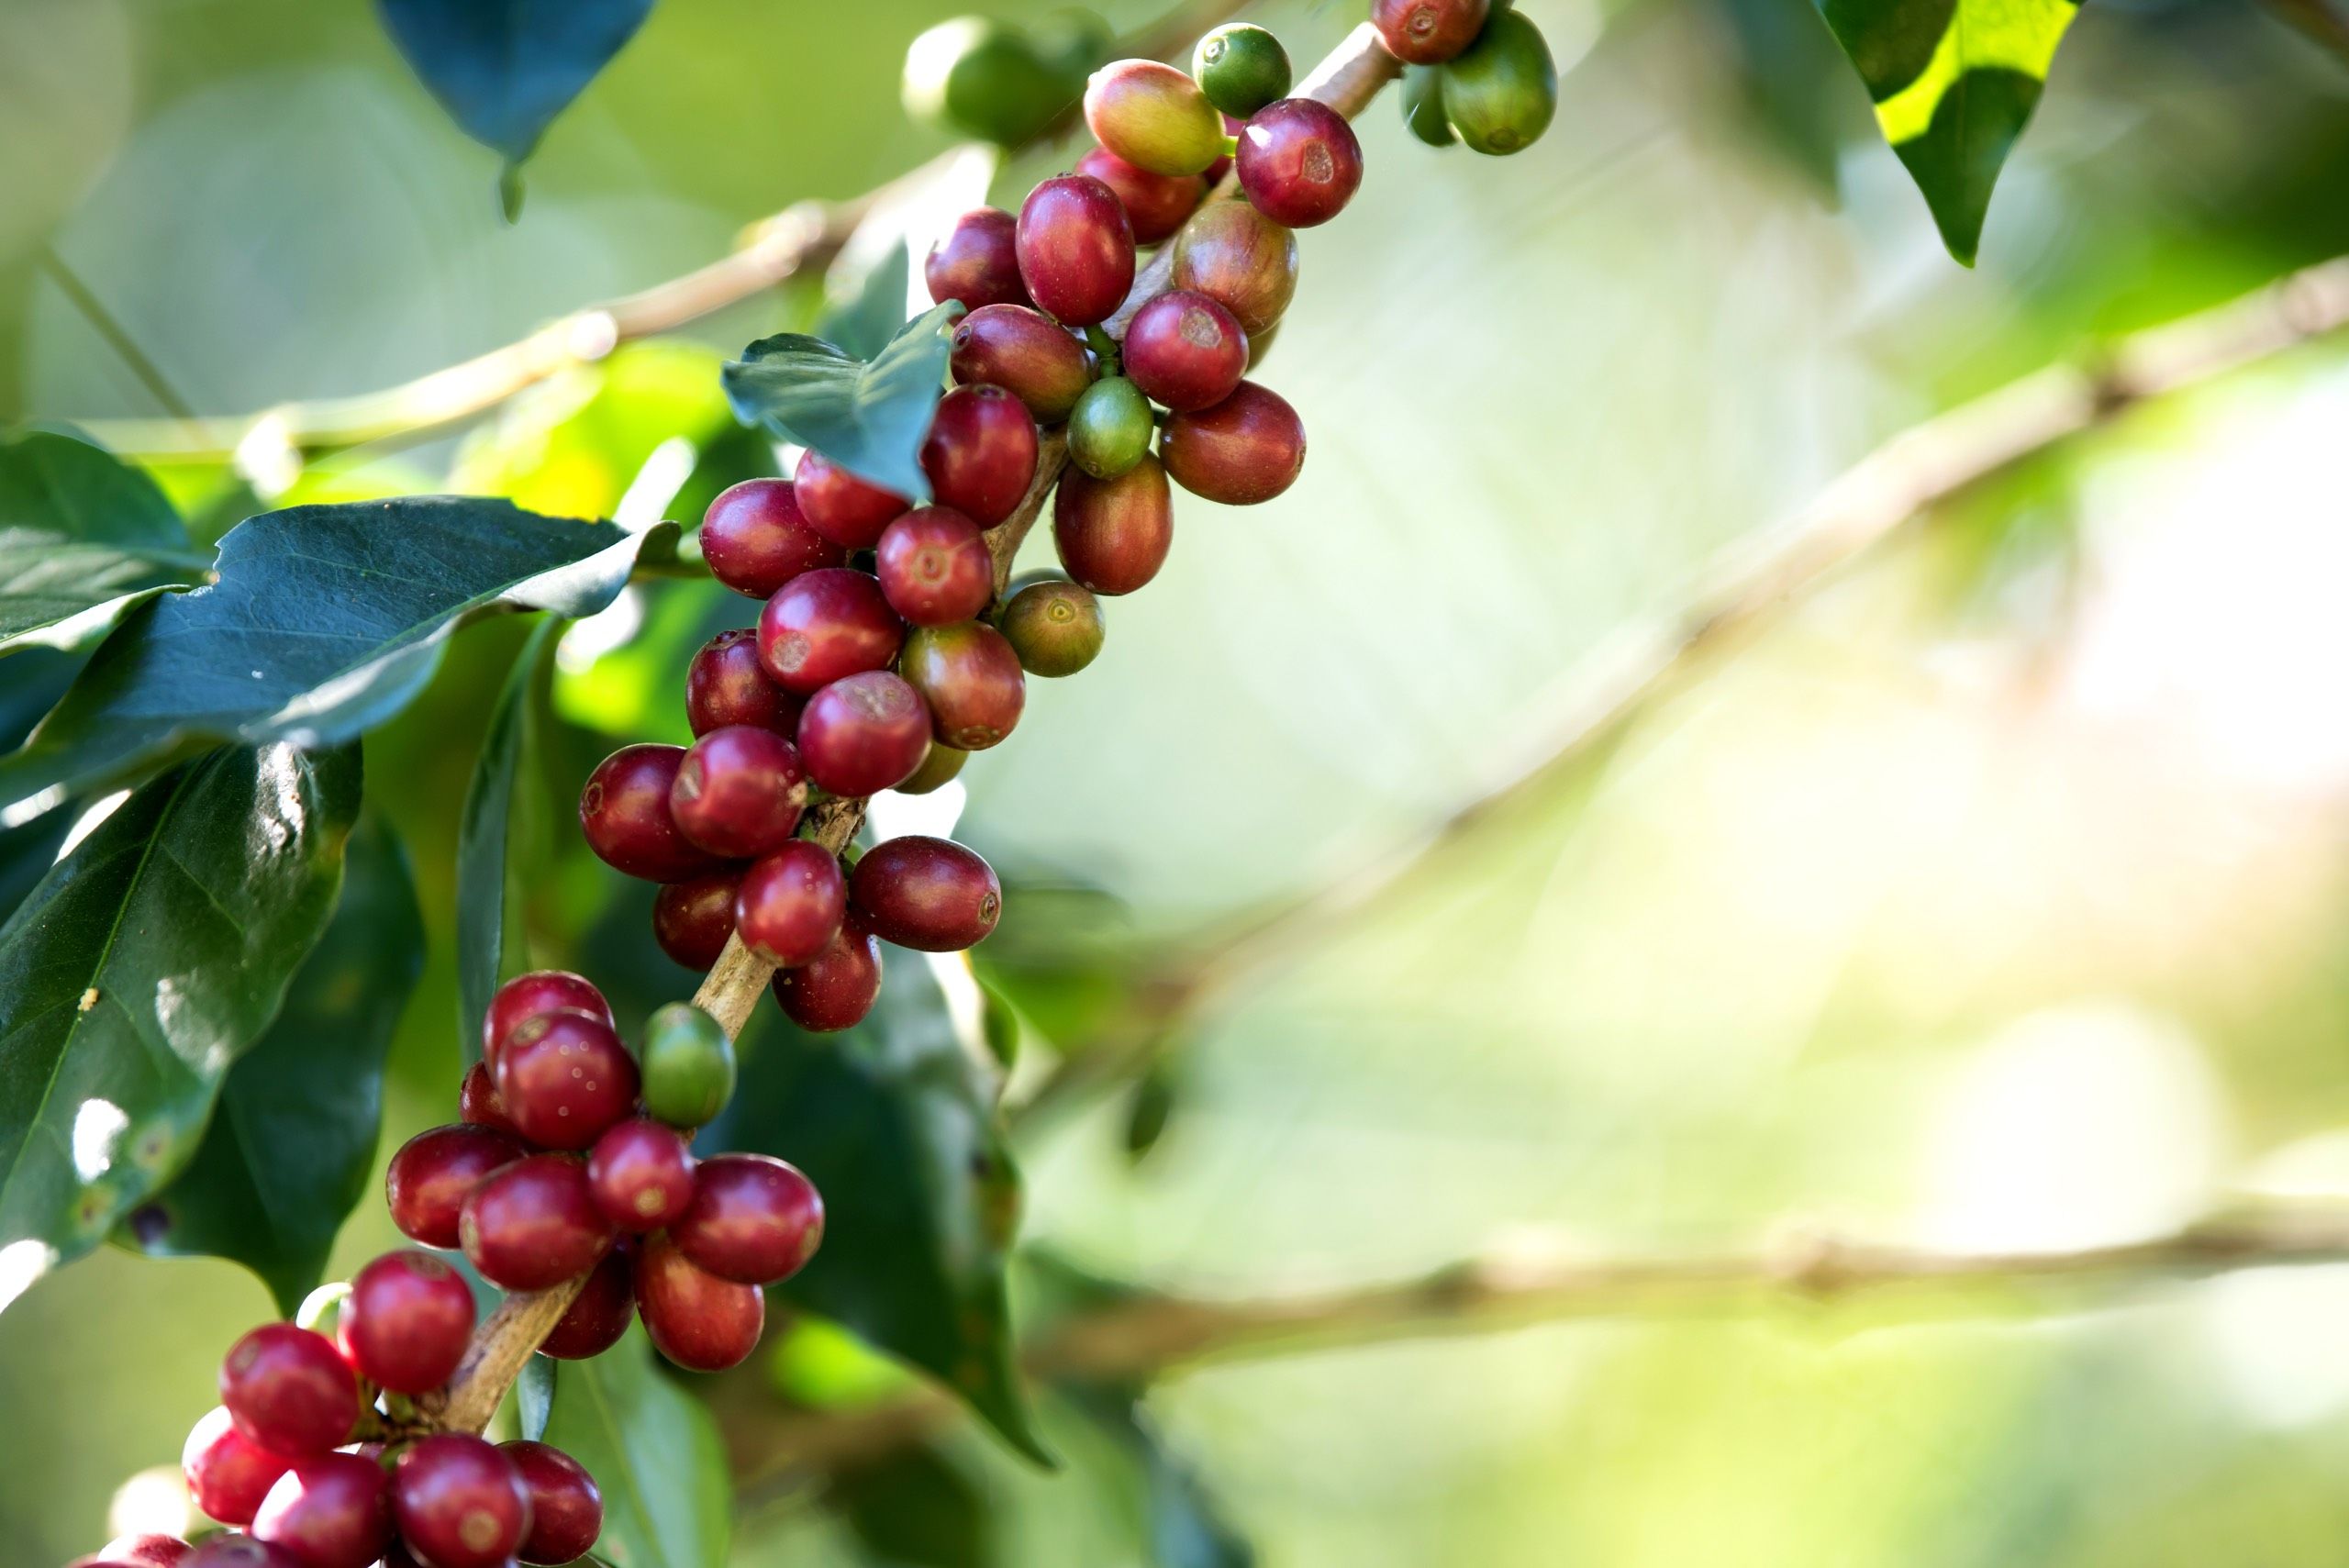 Coffee bean berry ripening on coffee farm 2021 08 31 06 18 58 utc 513c7aa4